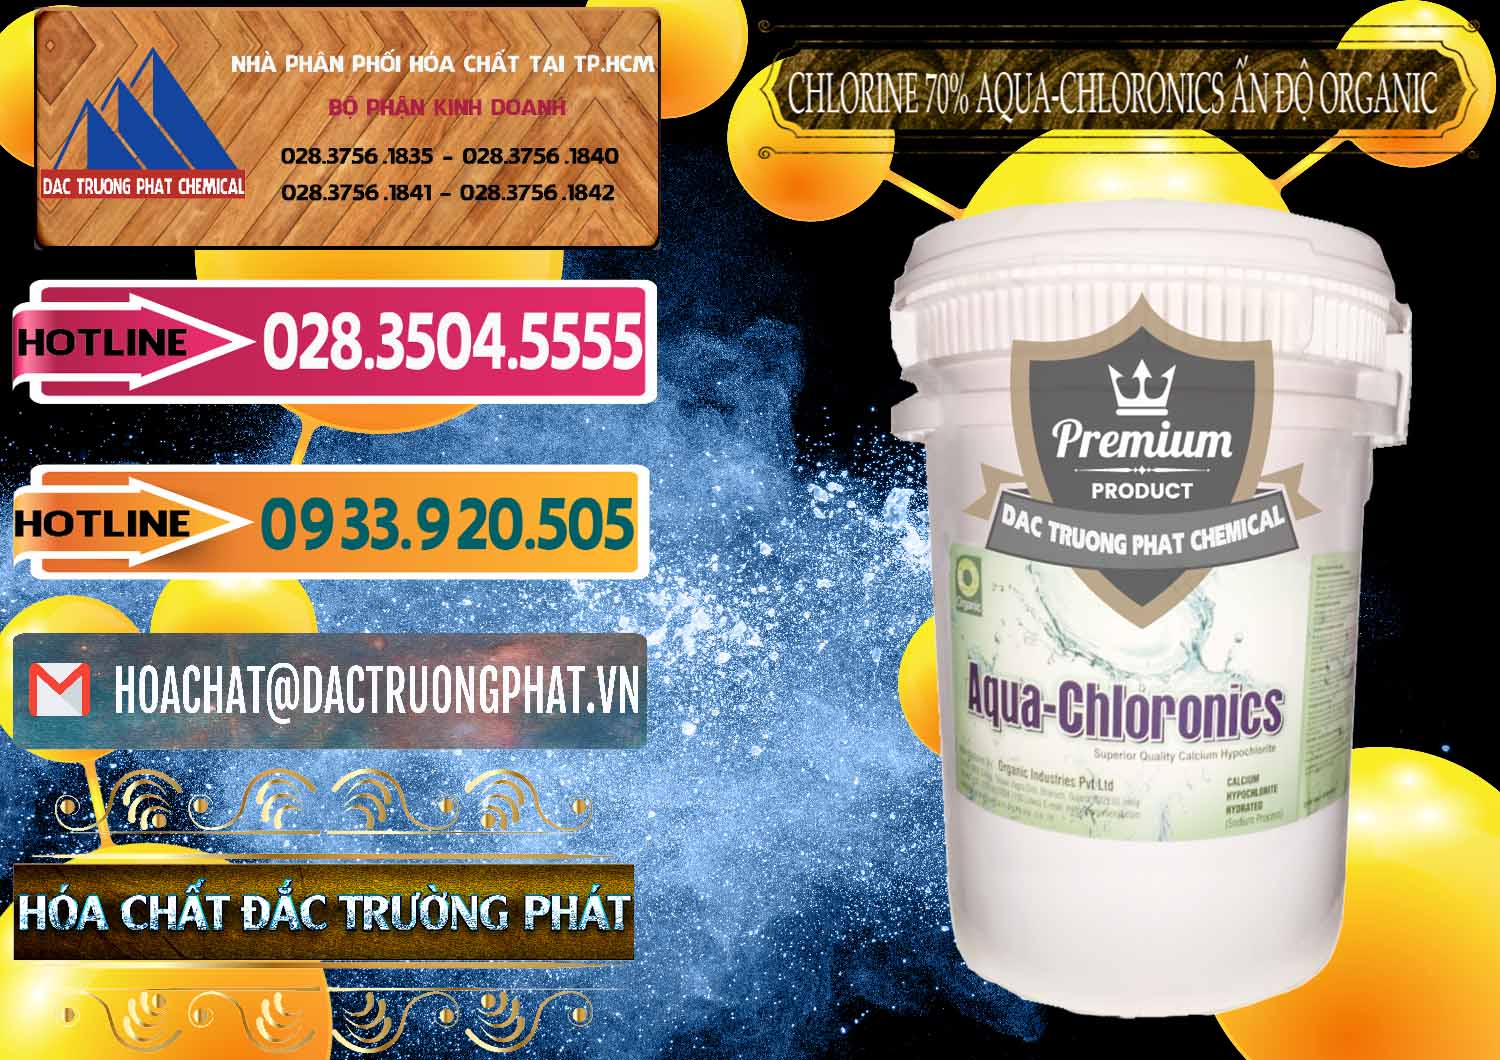 Nơi bán & cung cấp Chlorine – Clorin 70% Aqua-Chloronics Ấn Độ Organic India - 0211 - Chuyên cung cấp _ kinh doanh hóa chất tại TP.HCM - dactruongphat.vn